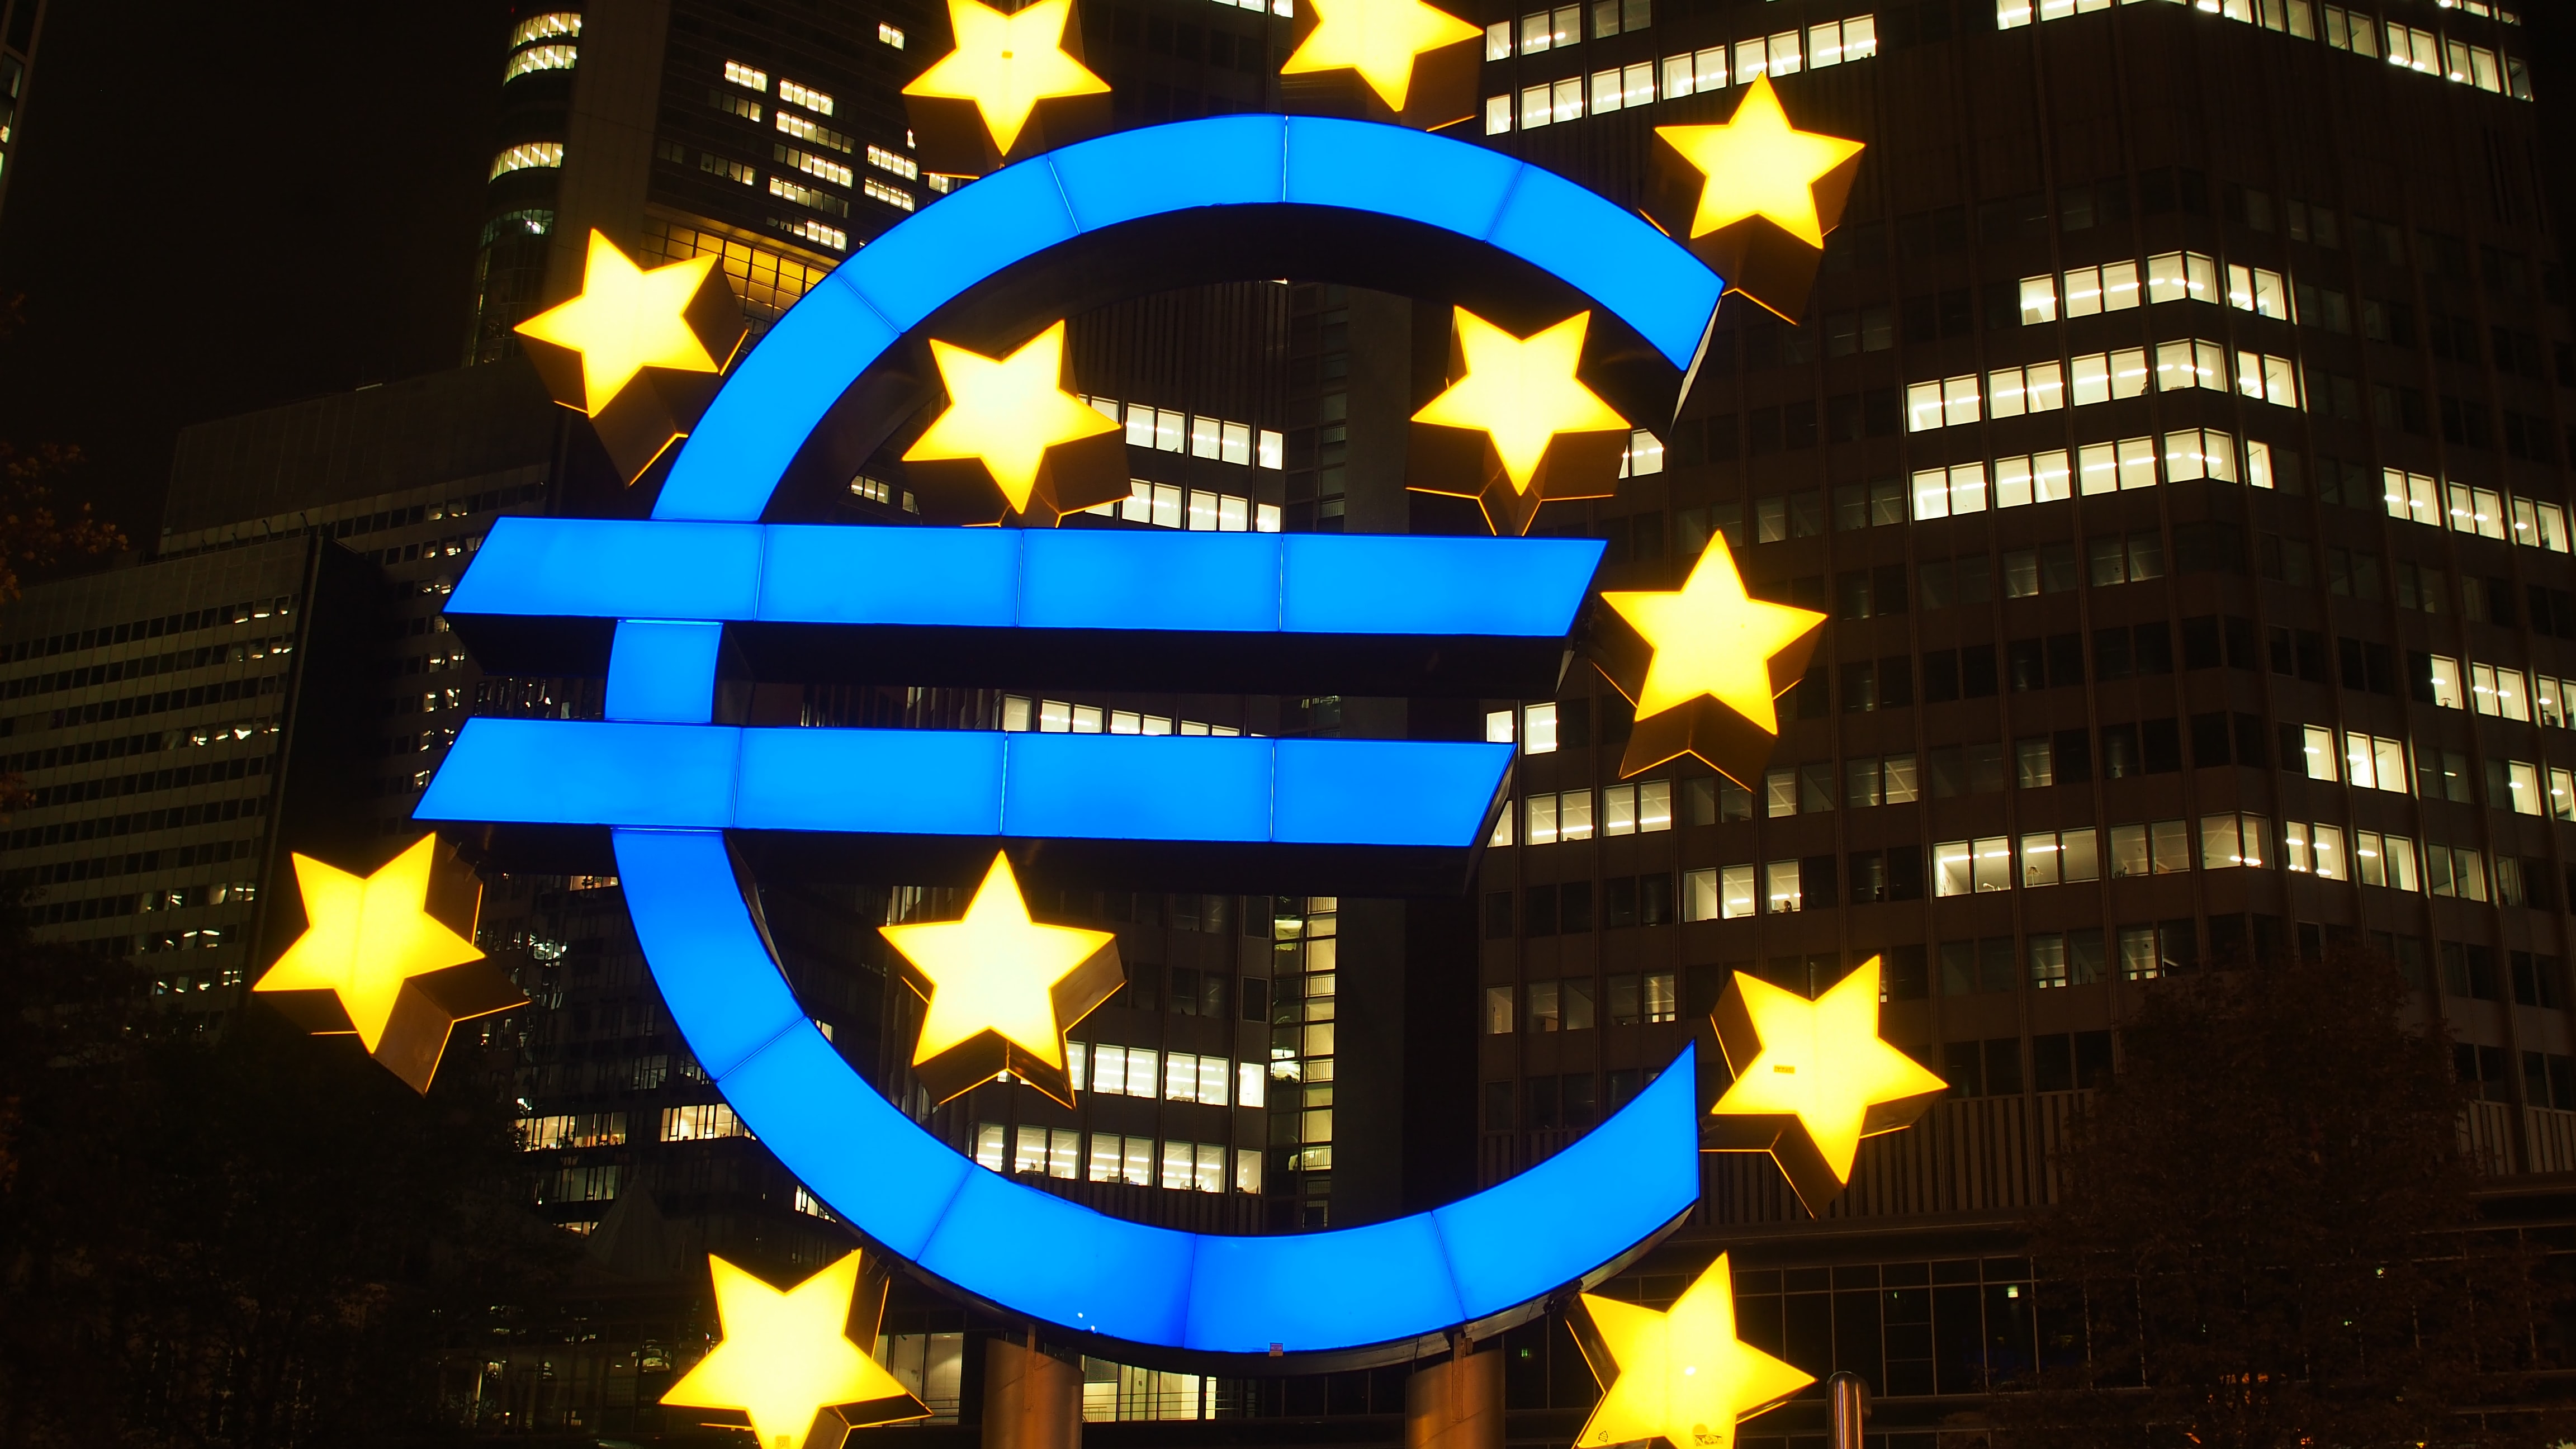 Illuminated Euro Symbol against City buildings